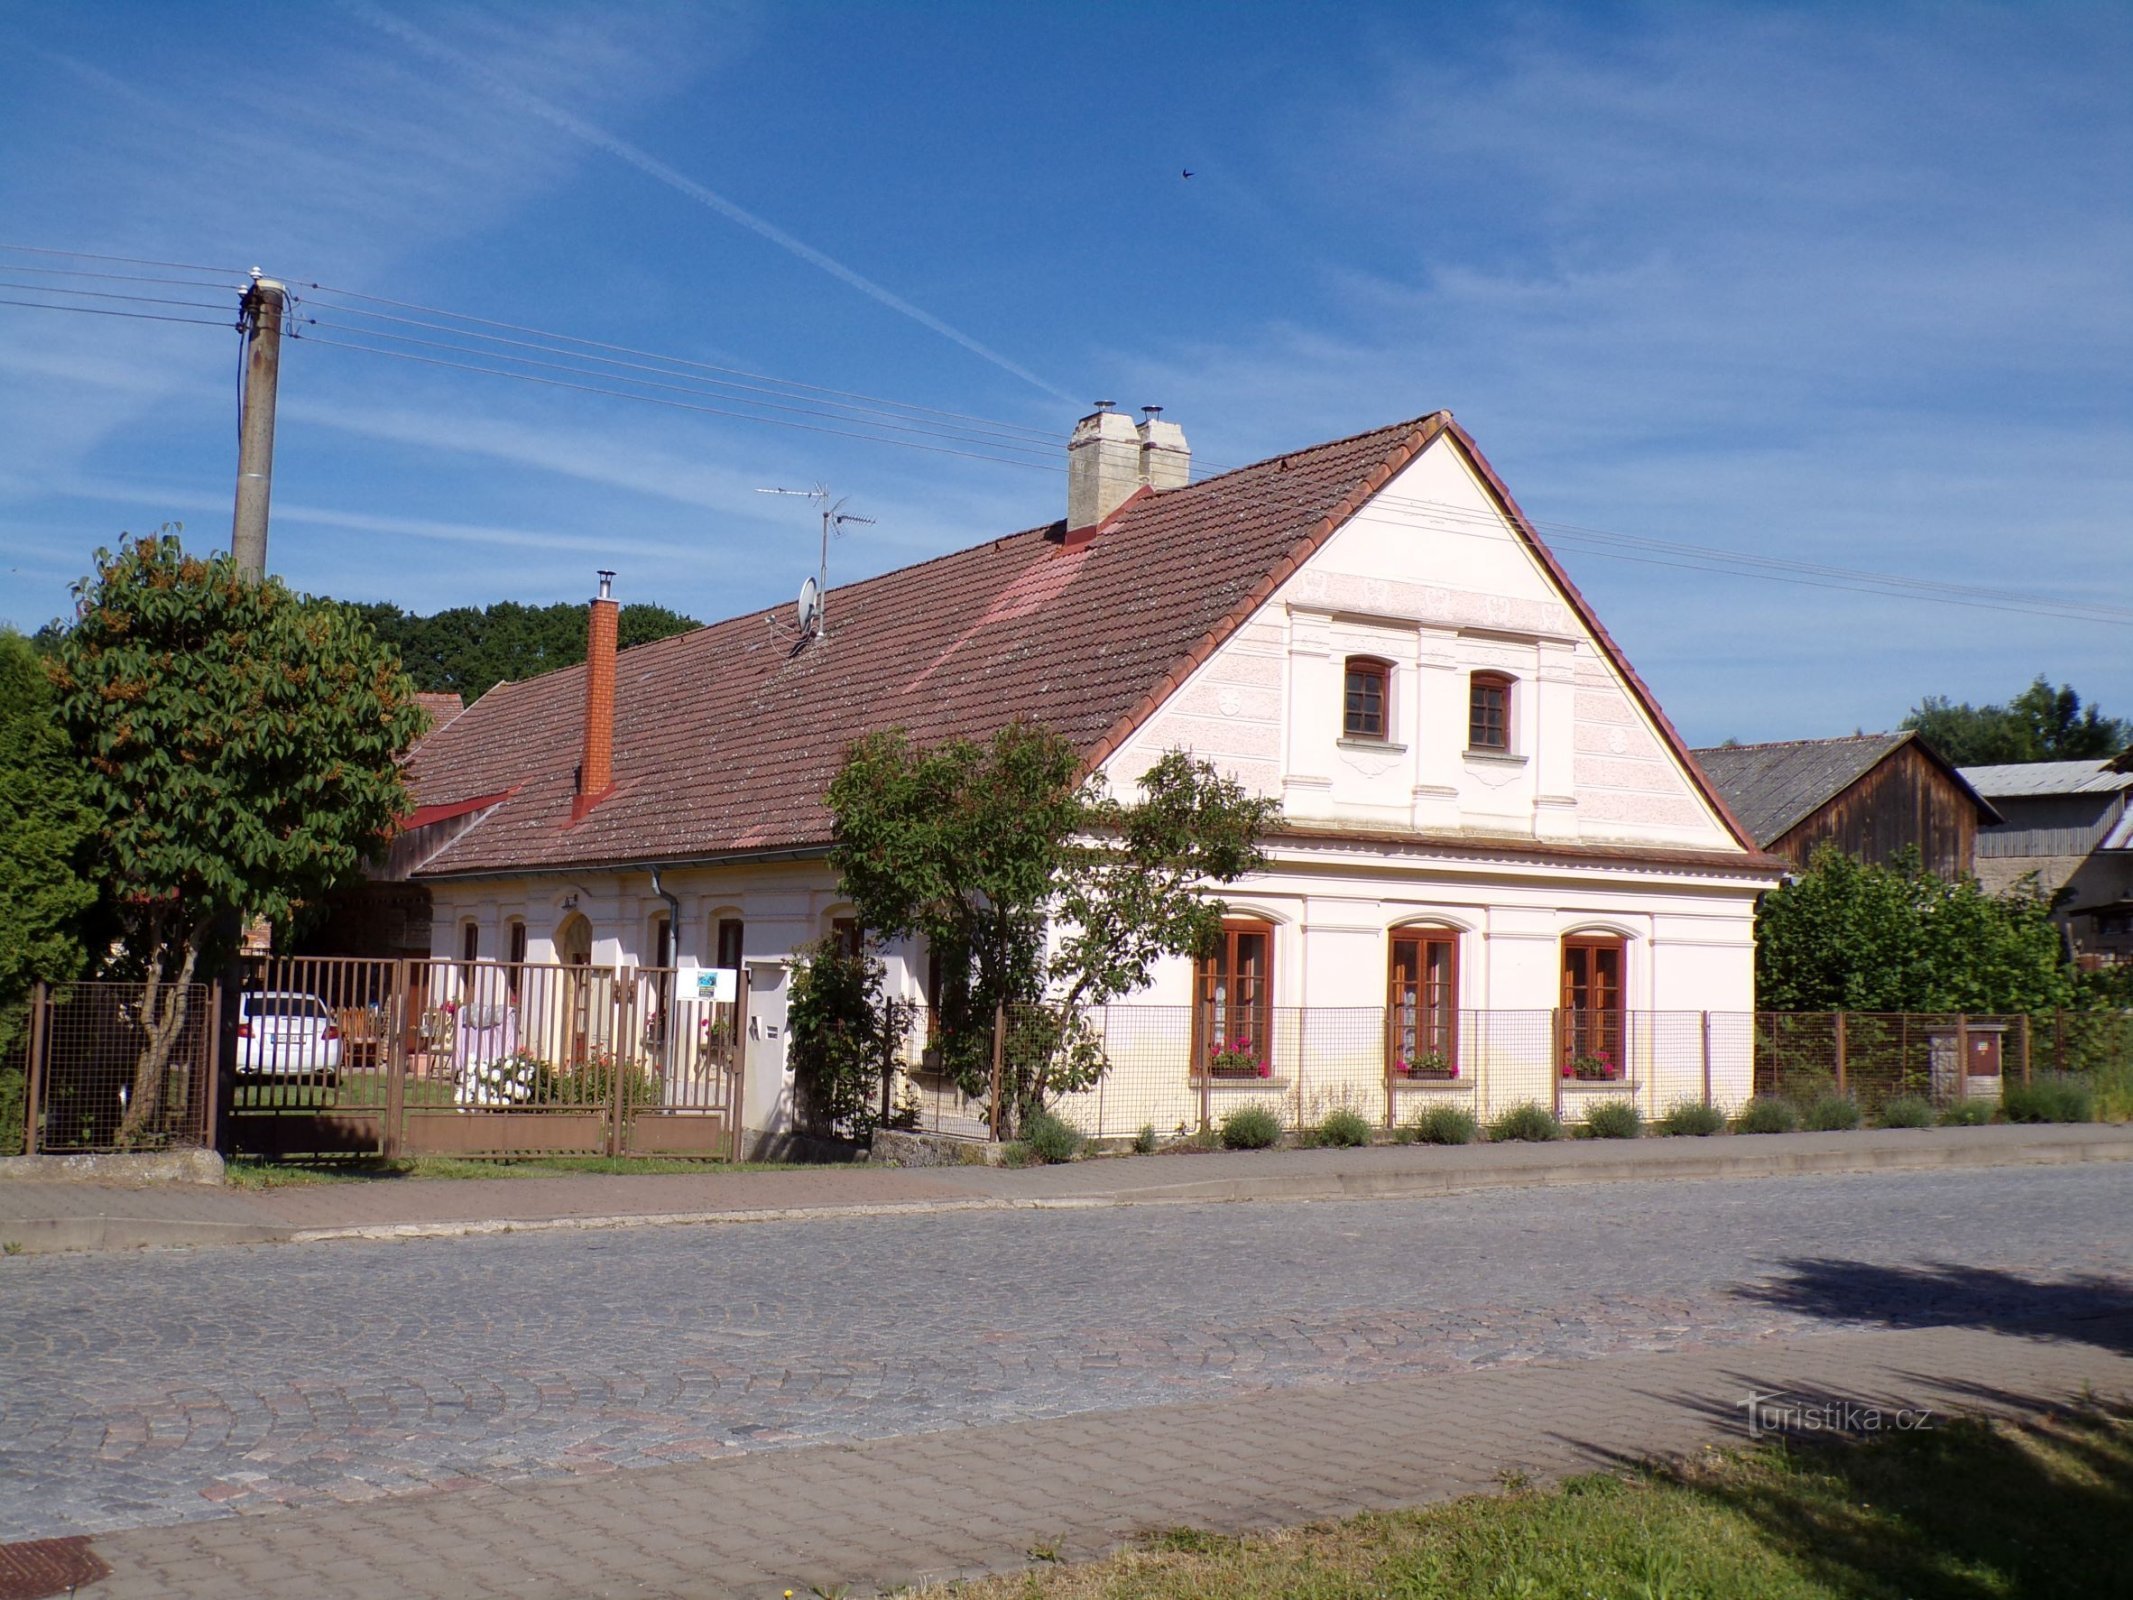 Jeníkovice nr. 51 (15.6.2021)